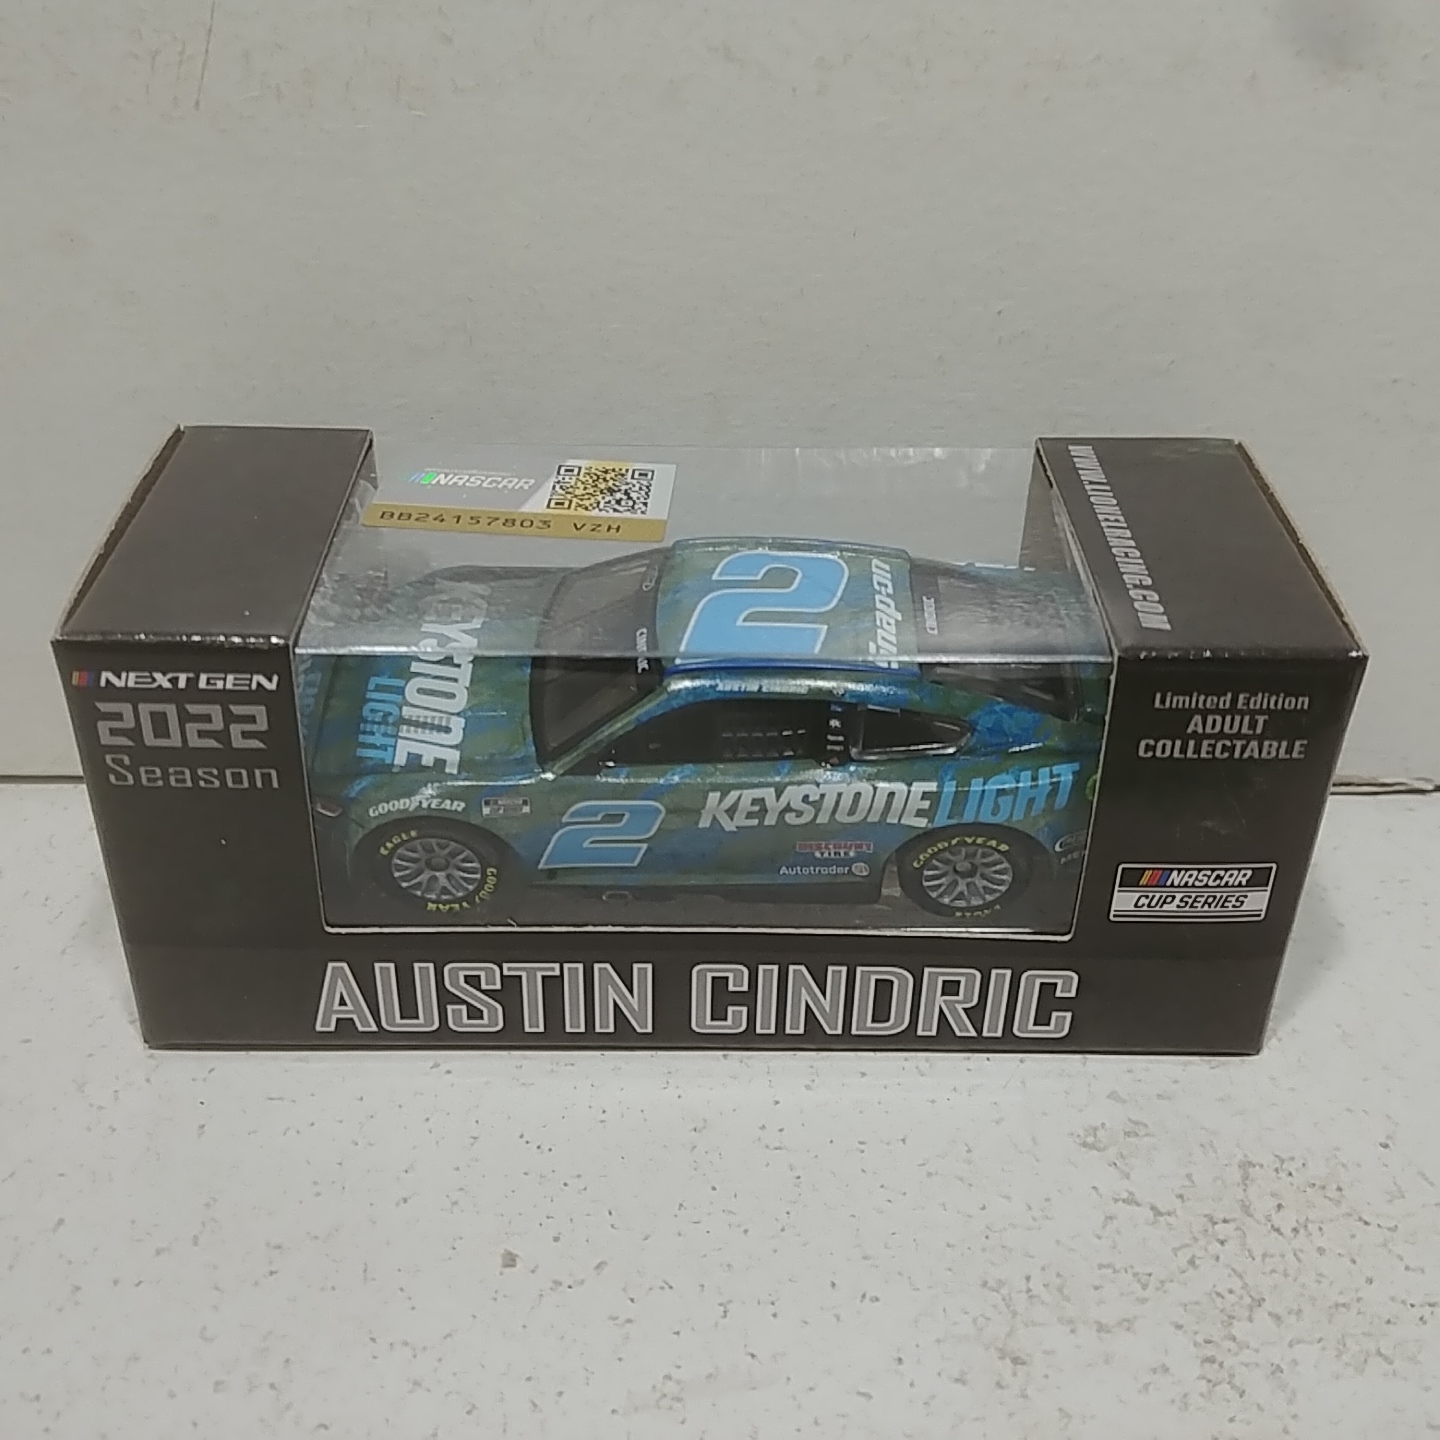 2022 Austin Cindric 1/64th Keystone Light "Next Gen" Mustang